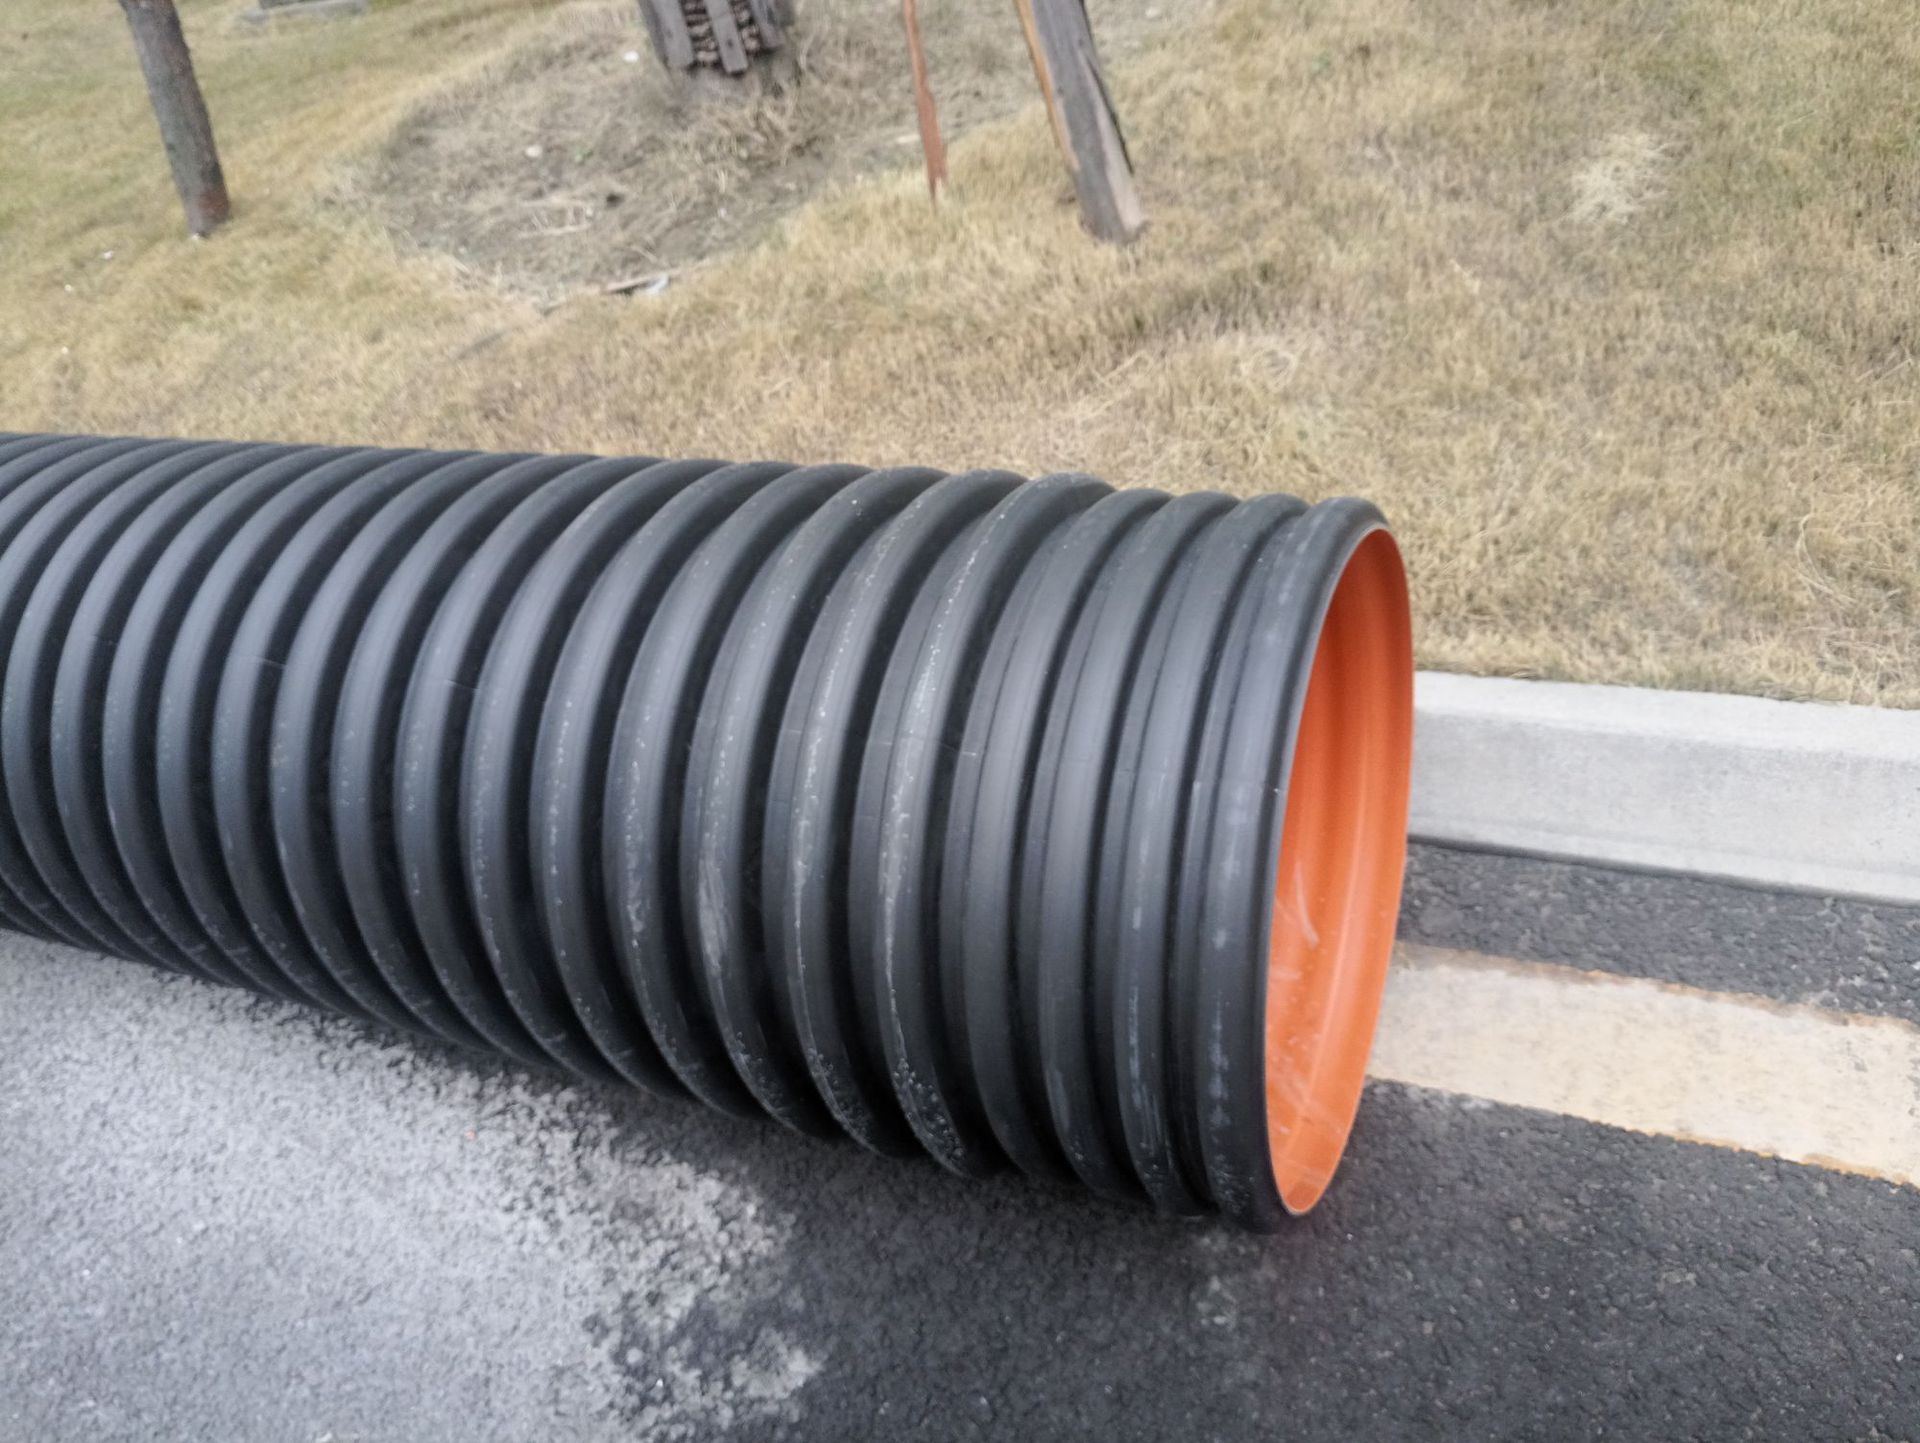 厂家批发HDPE双壁波纹管 埋地排水排污管道 dn400 S1 S2塑料管道示例图8